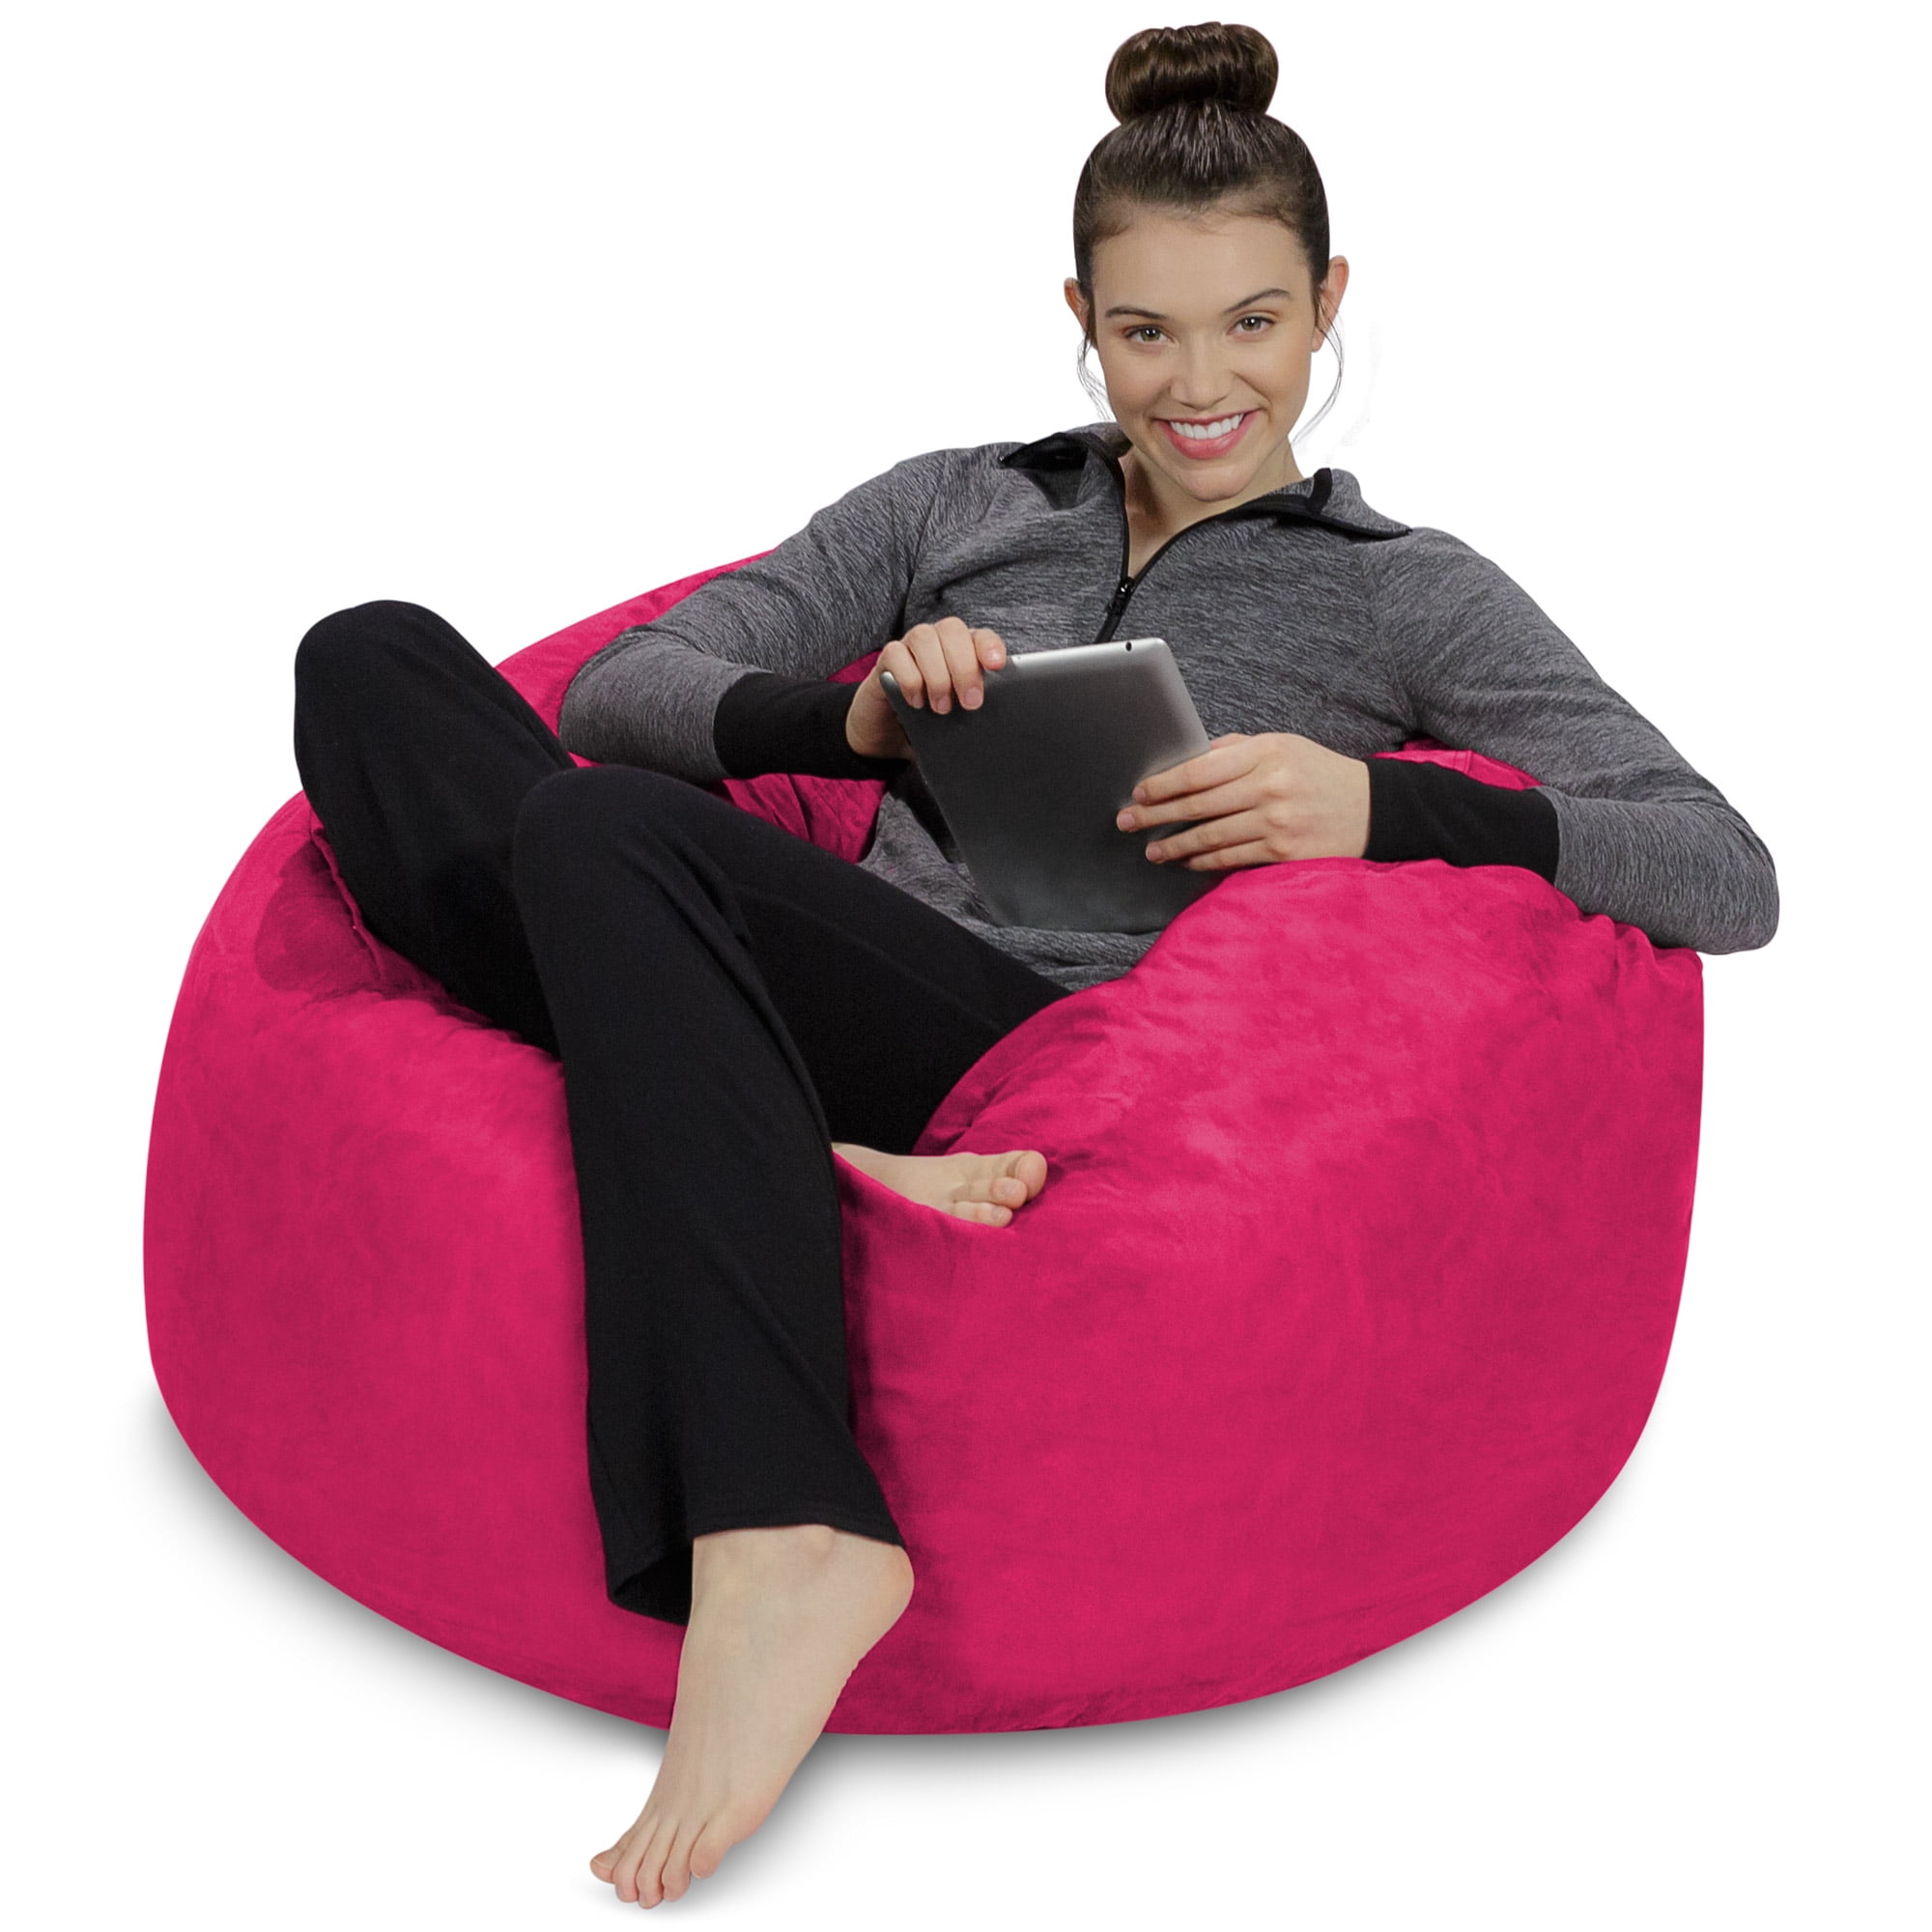 Comfy Sacks 5' Foam Bean Bag Chair In Magenta